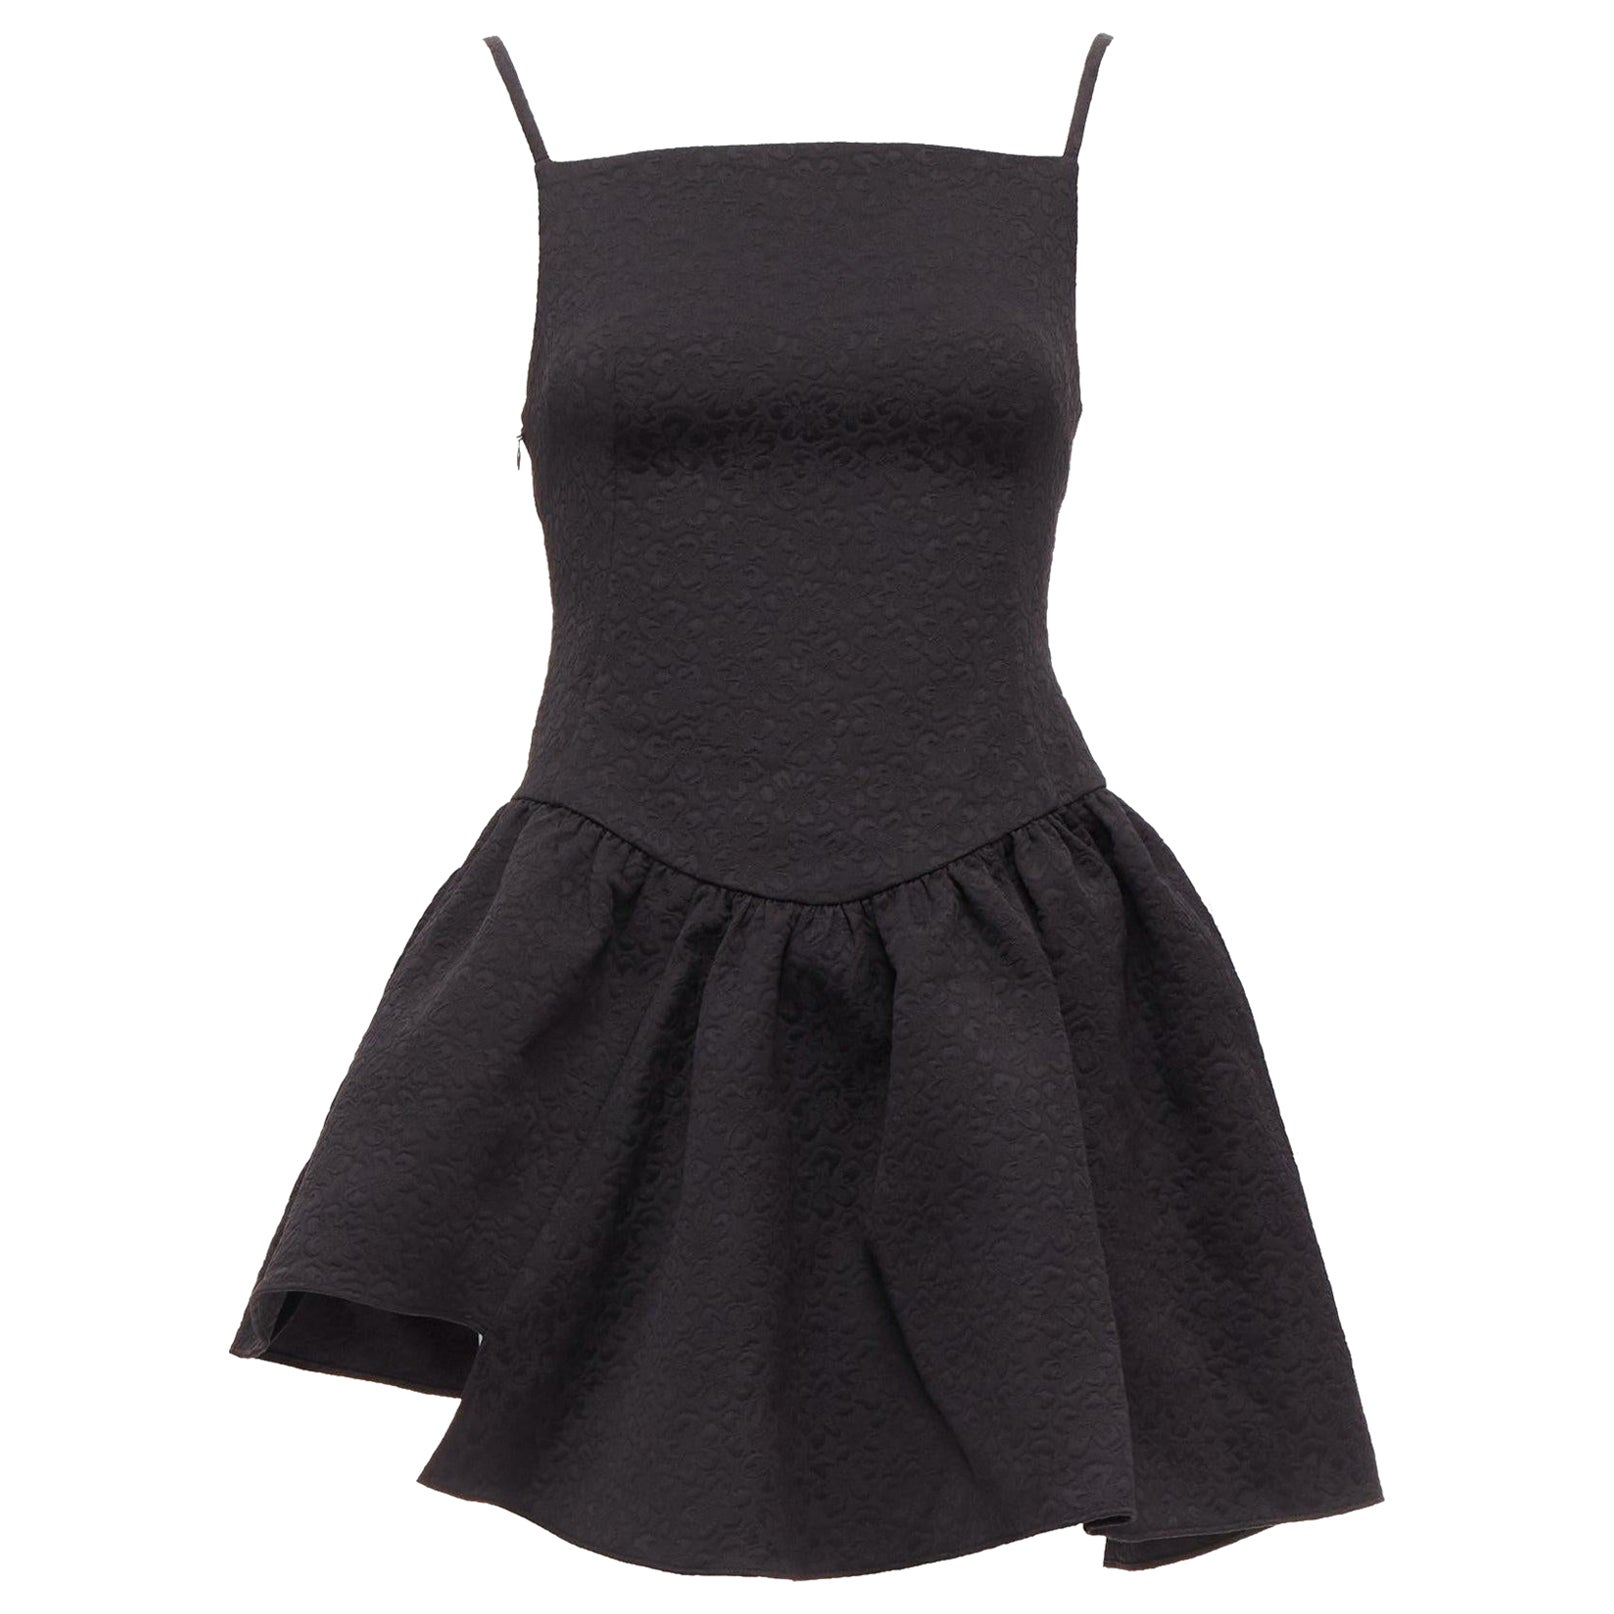 SHUSHU TONG black floral cloque spaghetti strap flounce skirt mini dress UK6 XS For Sale